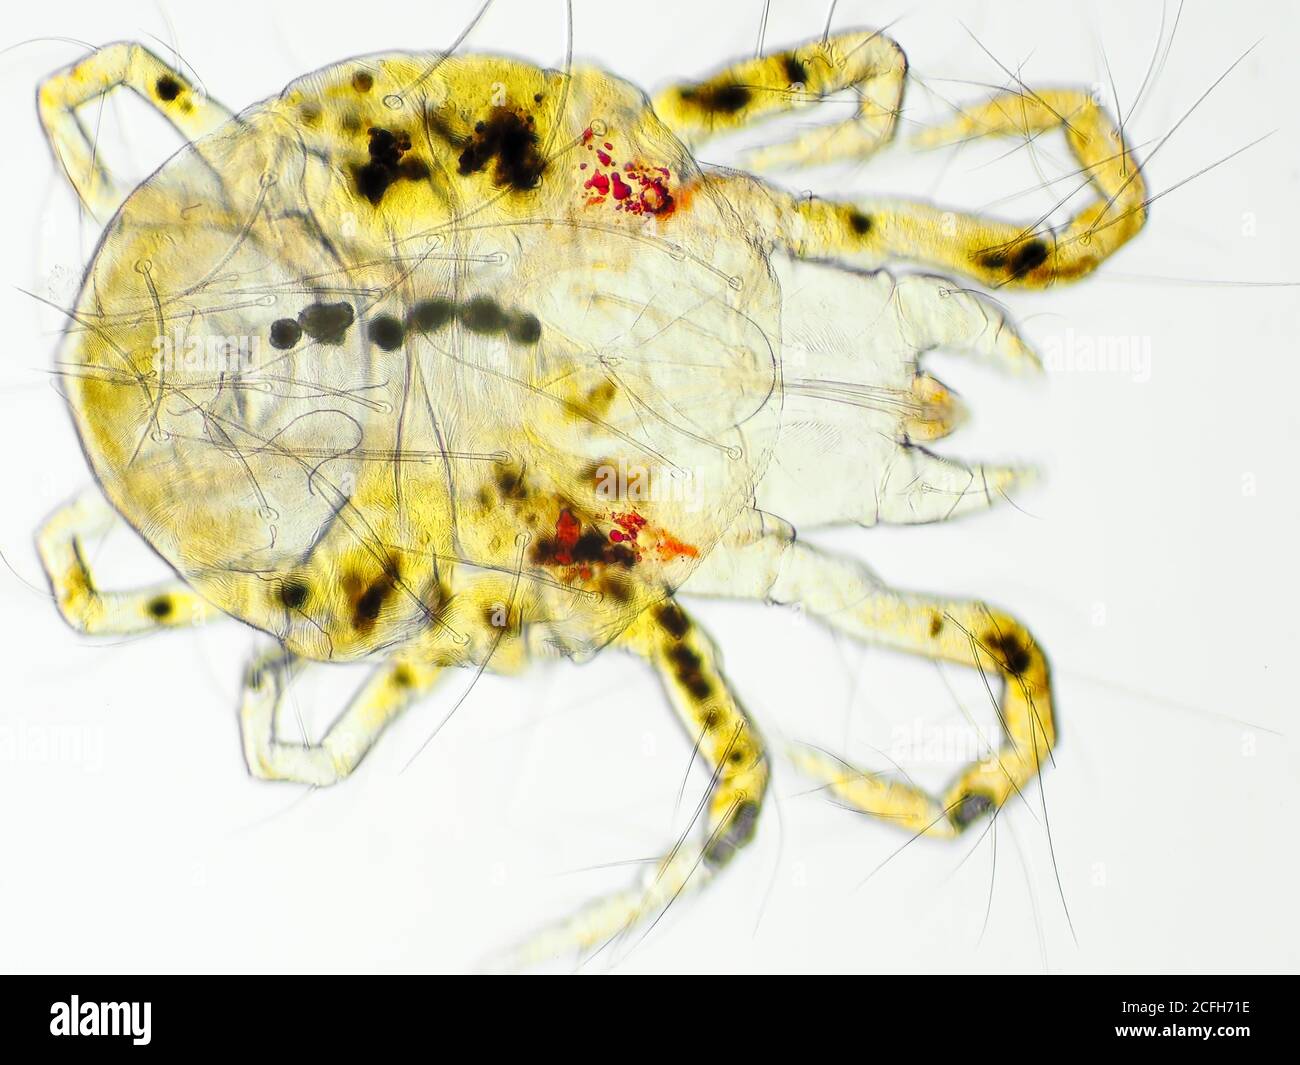 Acarien d'araignée (probablement acarien d'araignée du Pacifique ou acarien d'araignée de Willamette) sous le microscope, le champ de vision horizontal est d'environ 0,61mm Banque D'Images